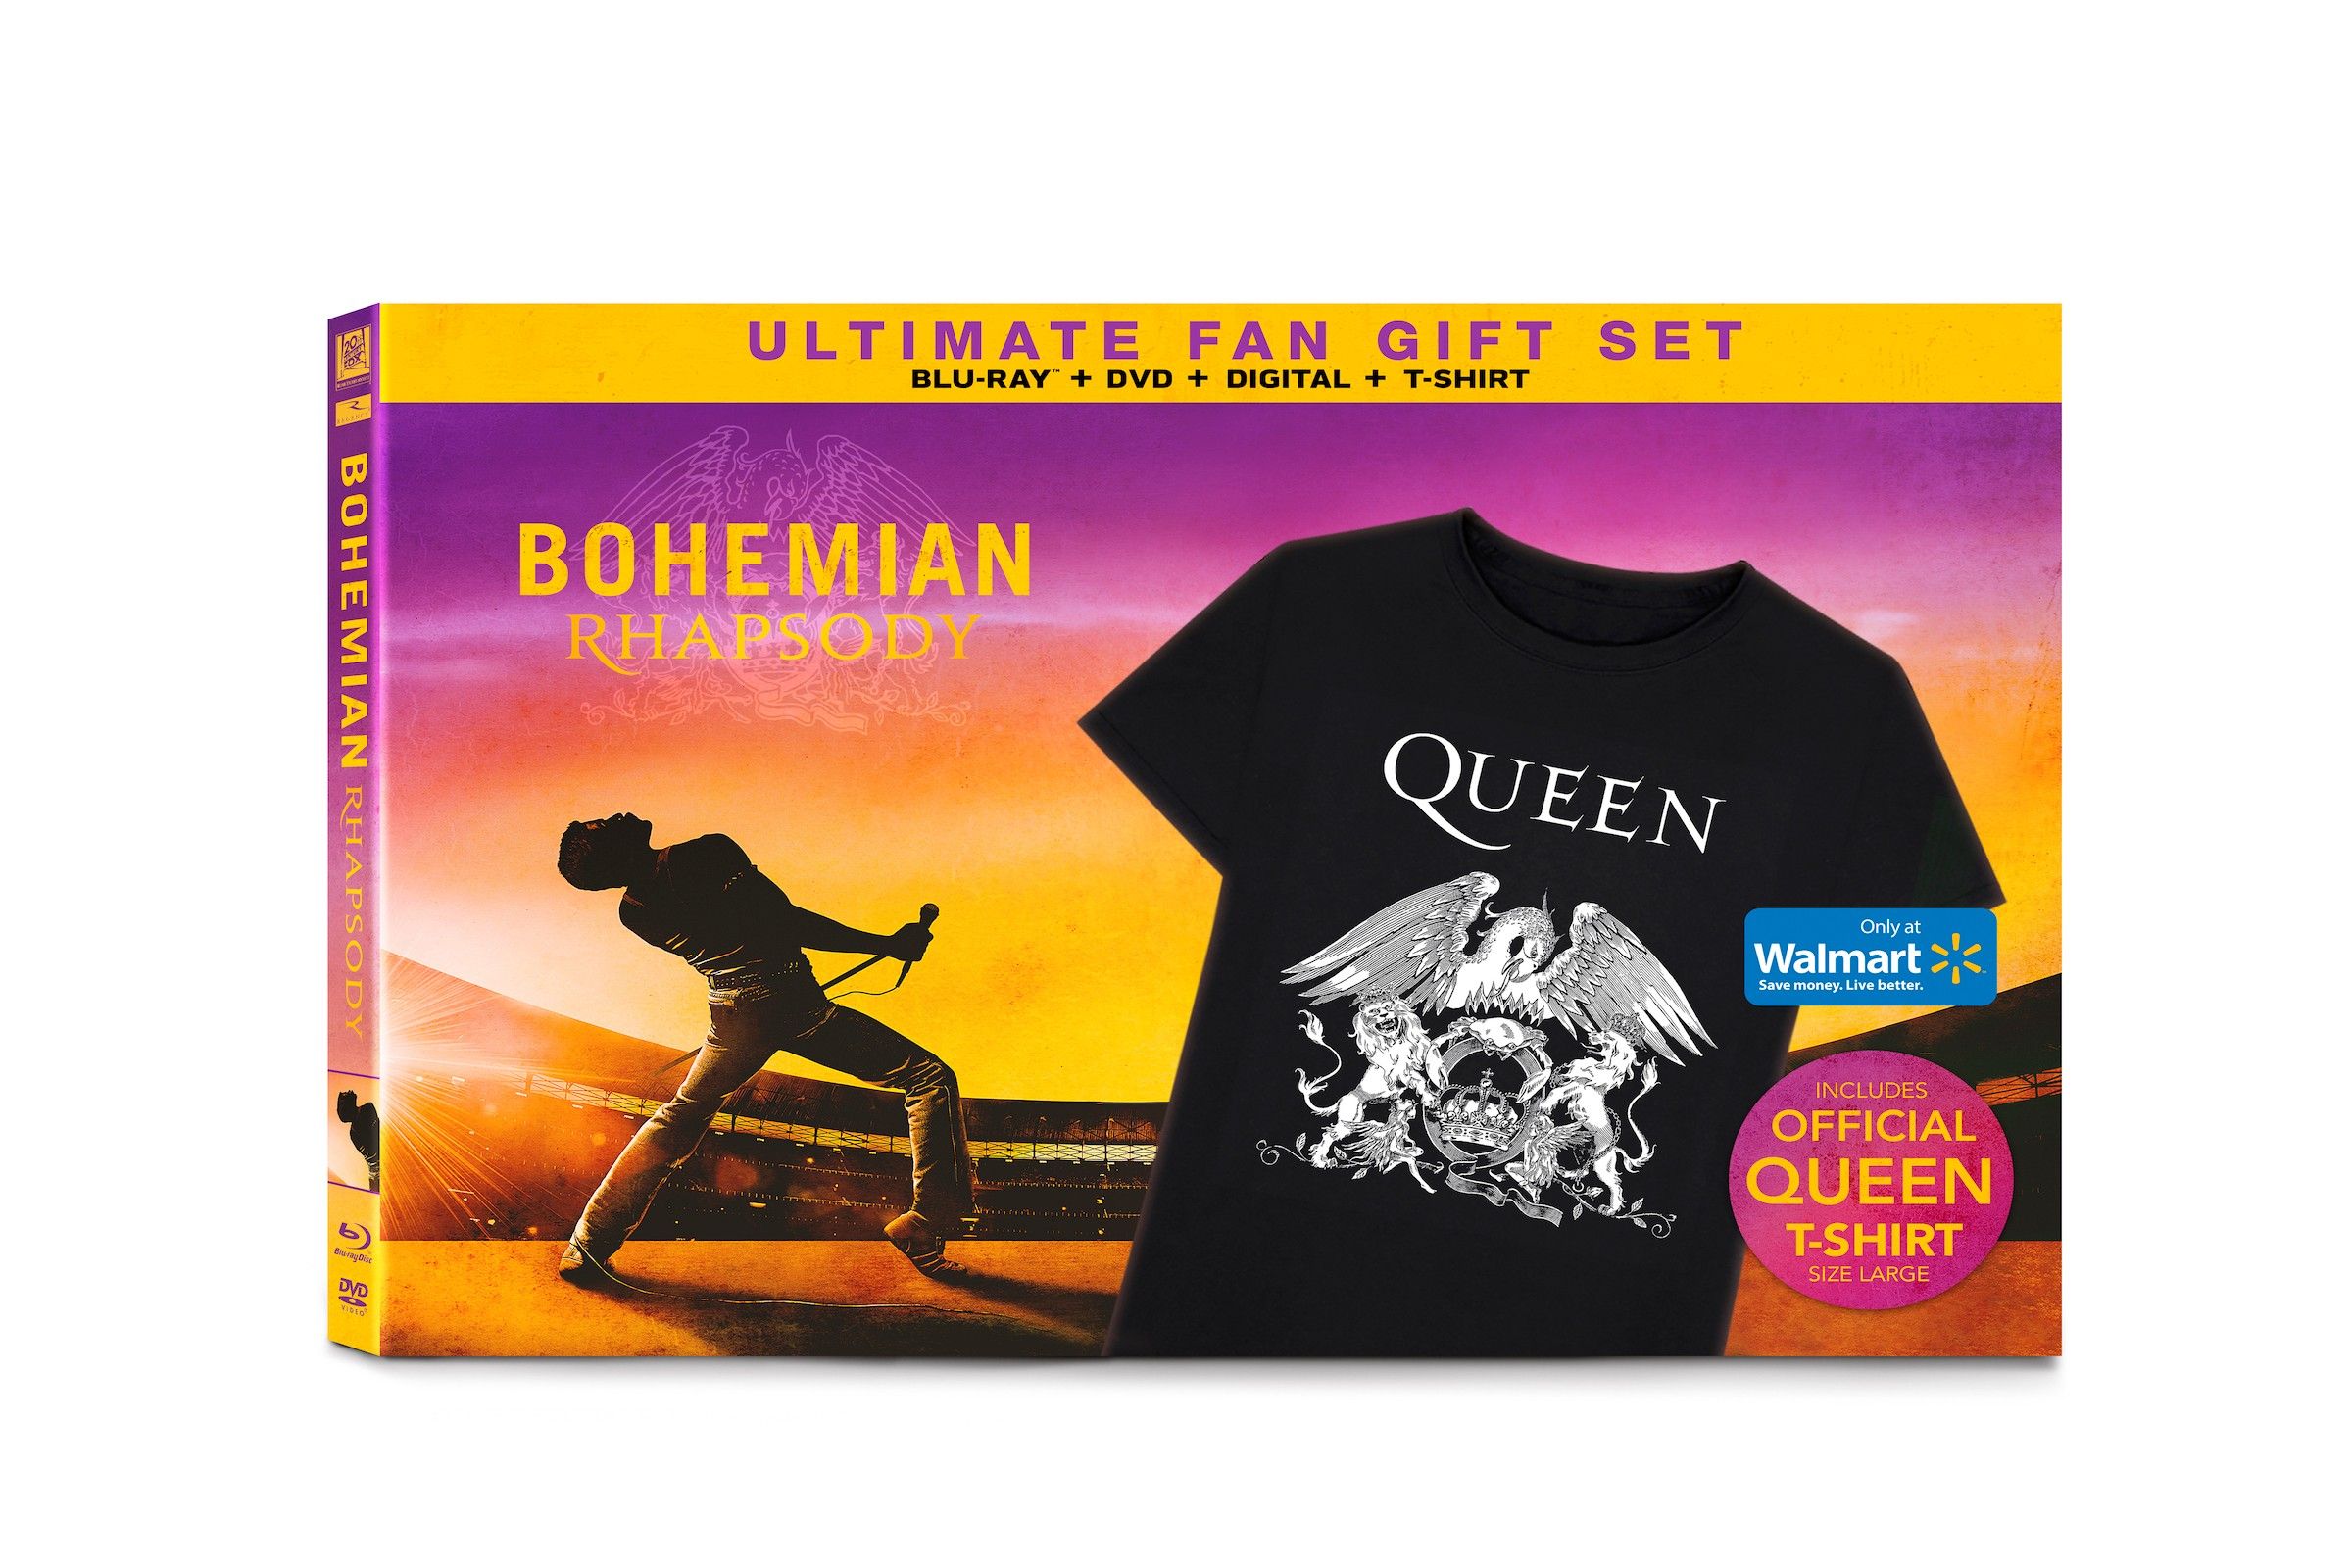 Exclusive: Bohemian Rhapsody’s Walmart Ultimate Fan Gift Set Revealed